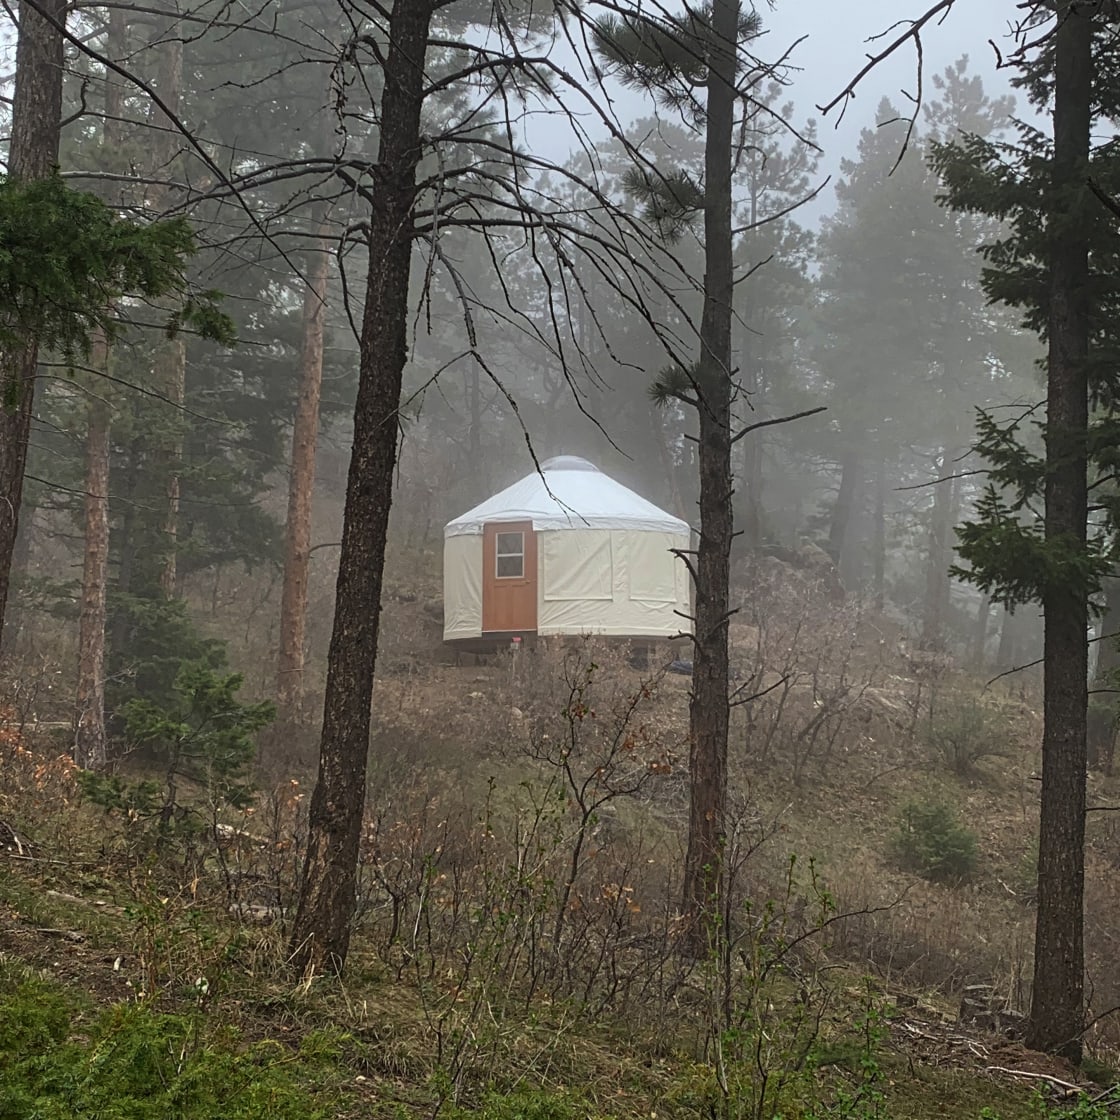 Sunrise Forest Campsite & Yurt